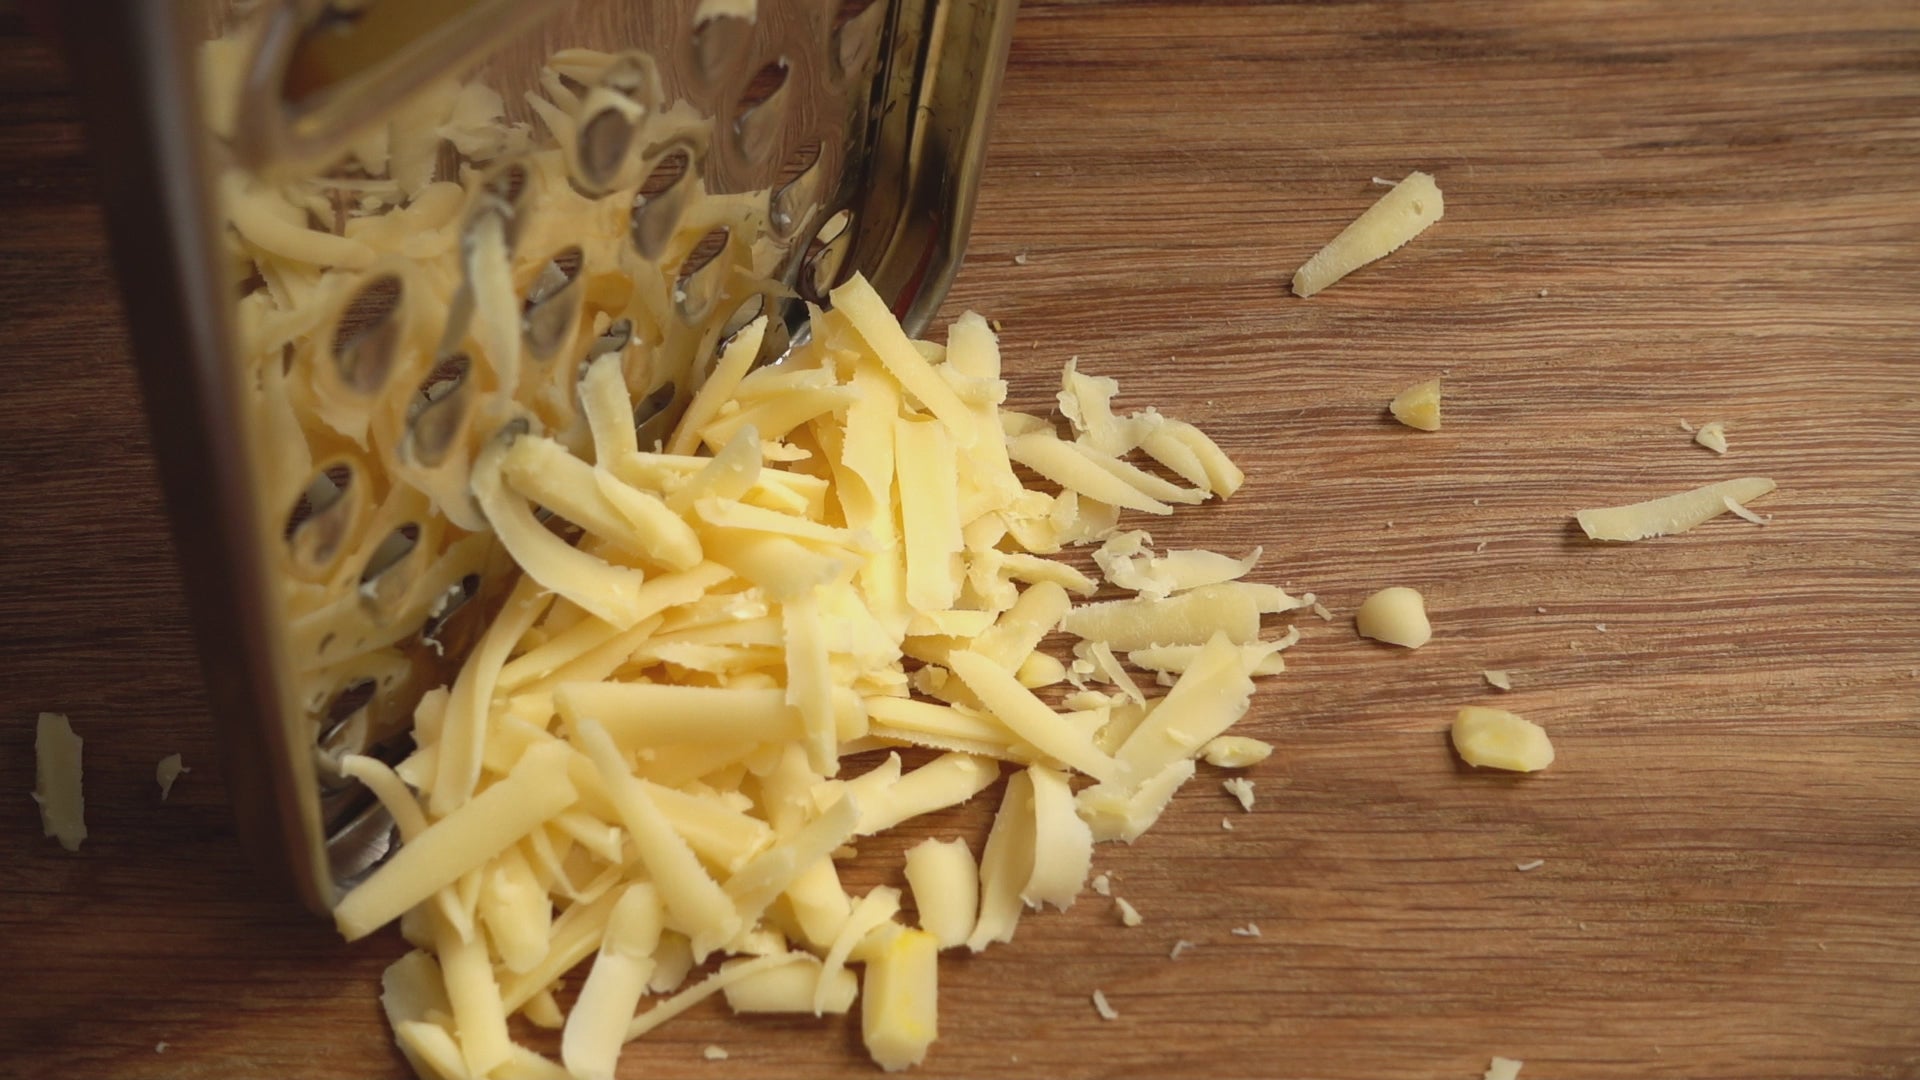 Veganer Käse aus Marillen-Kernen wird gerieben um zu schmelzen